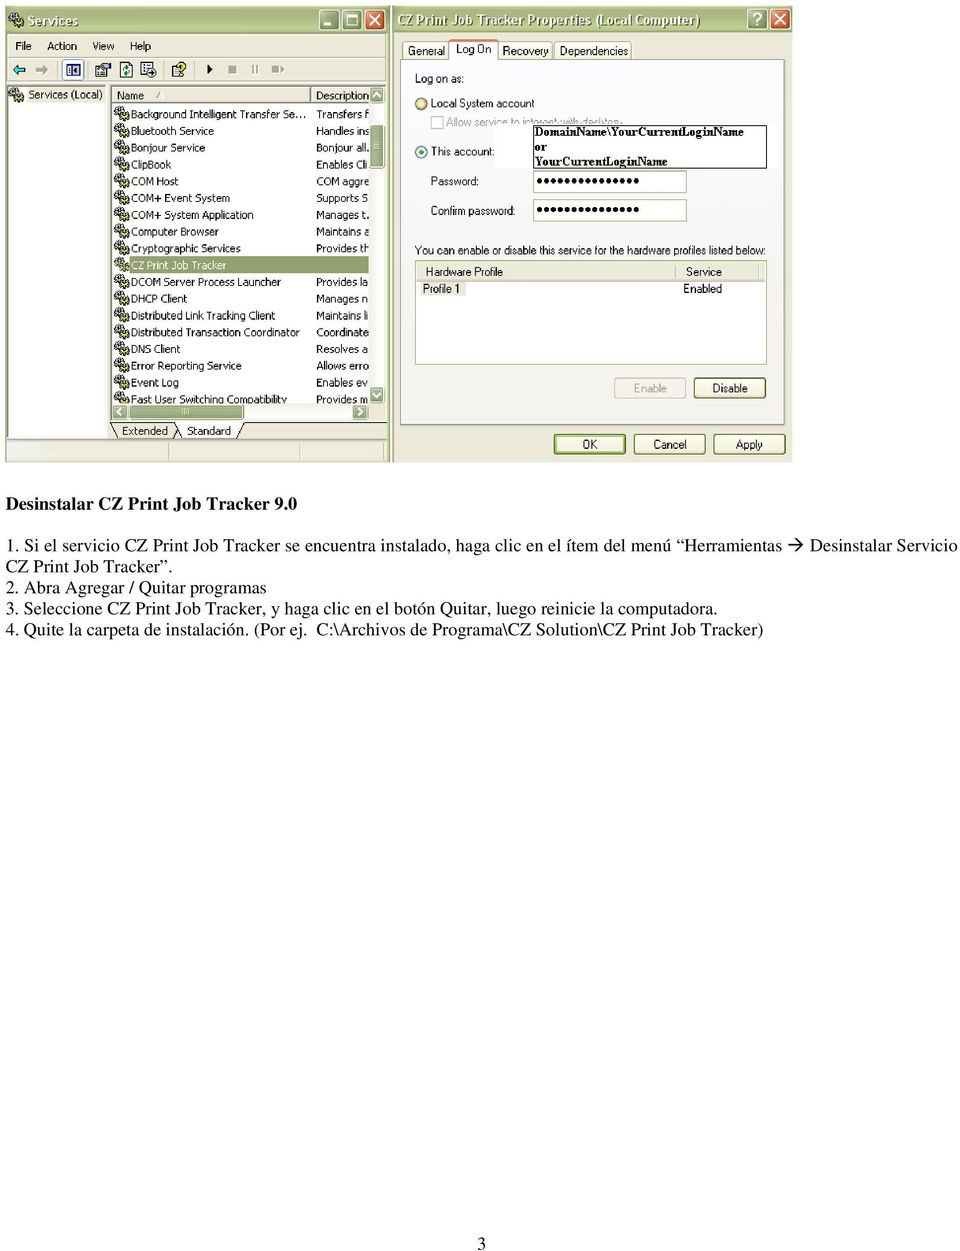 Desinstalar Servicio CZ Print Job Tracker. 2. Abra Agregar / Quitar programas 3.